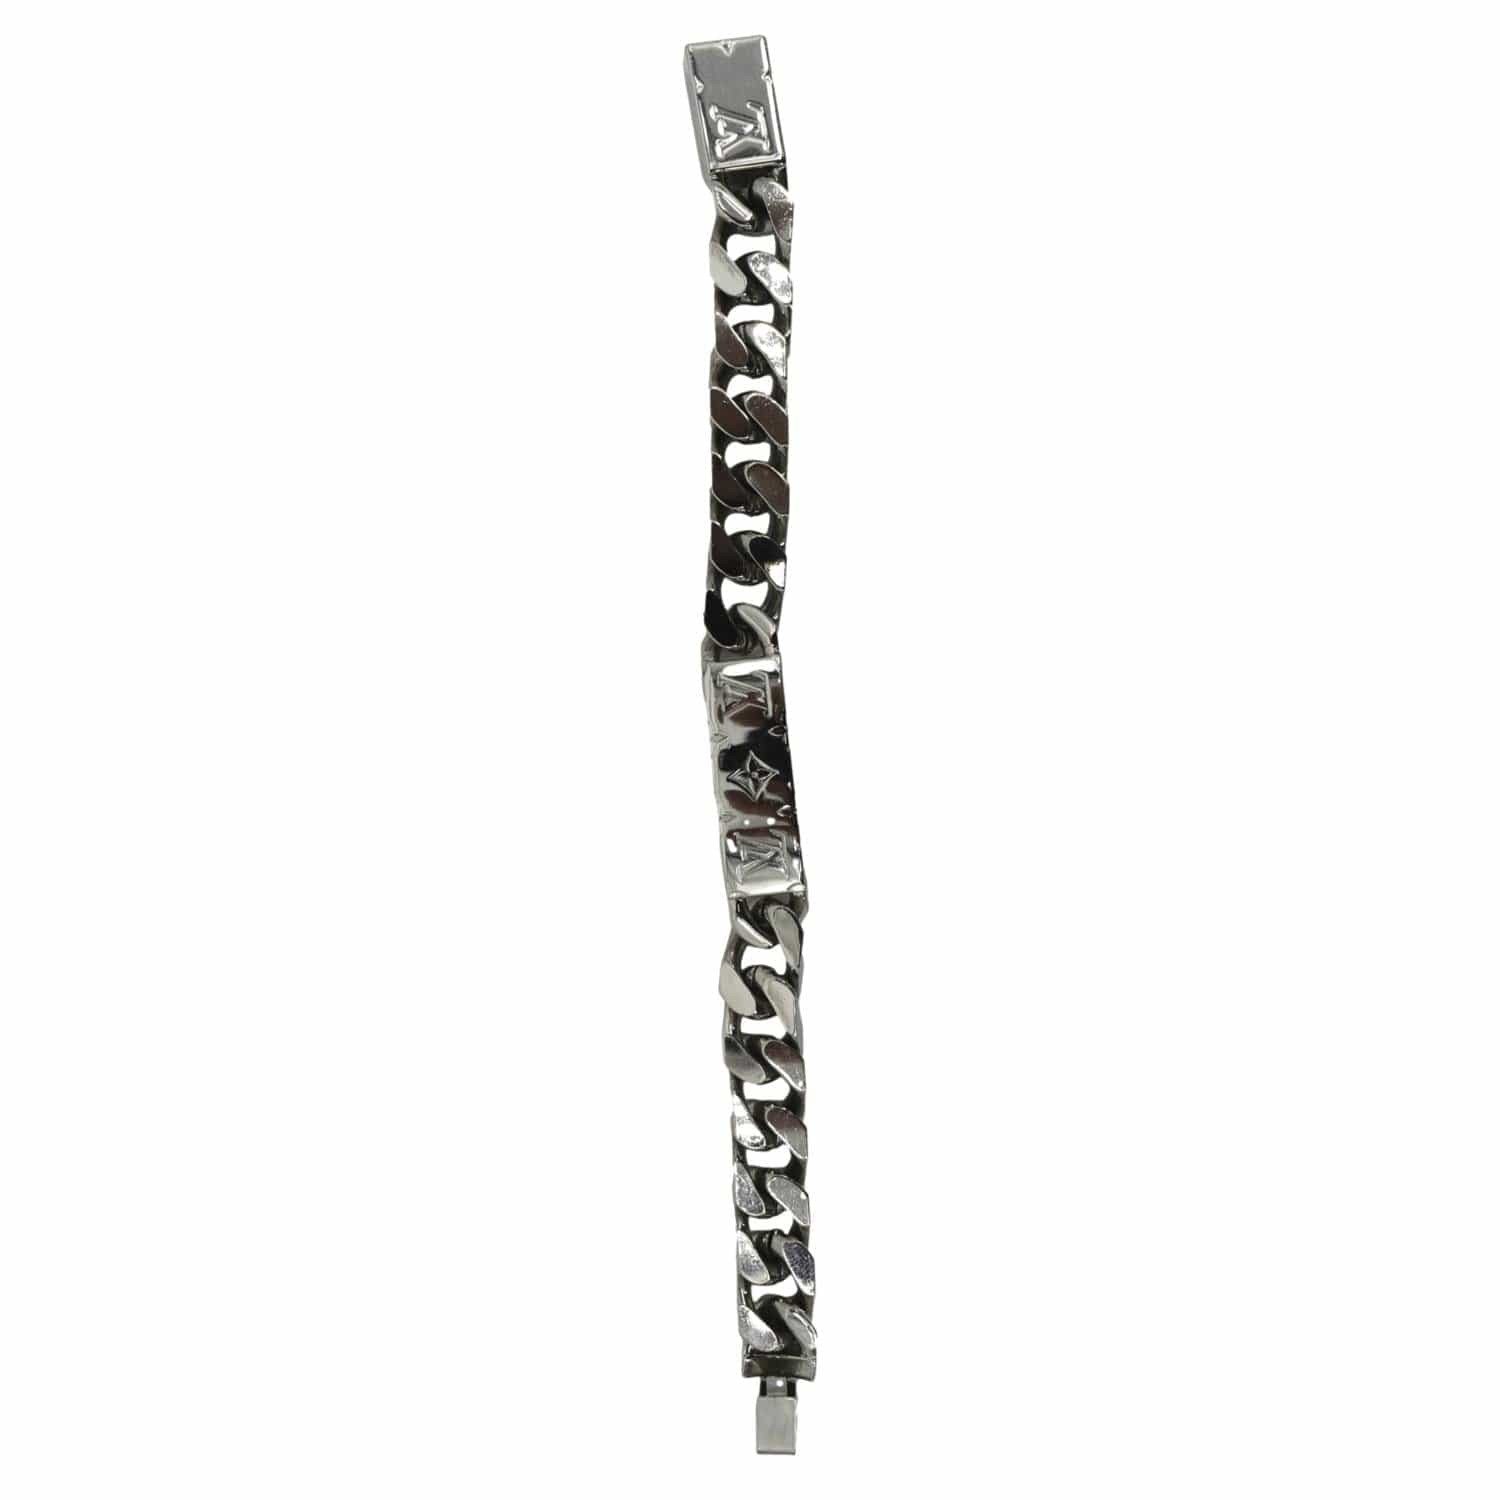 Authentic louis vuitton monogram chain bracelet Worn